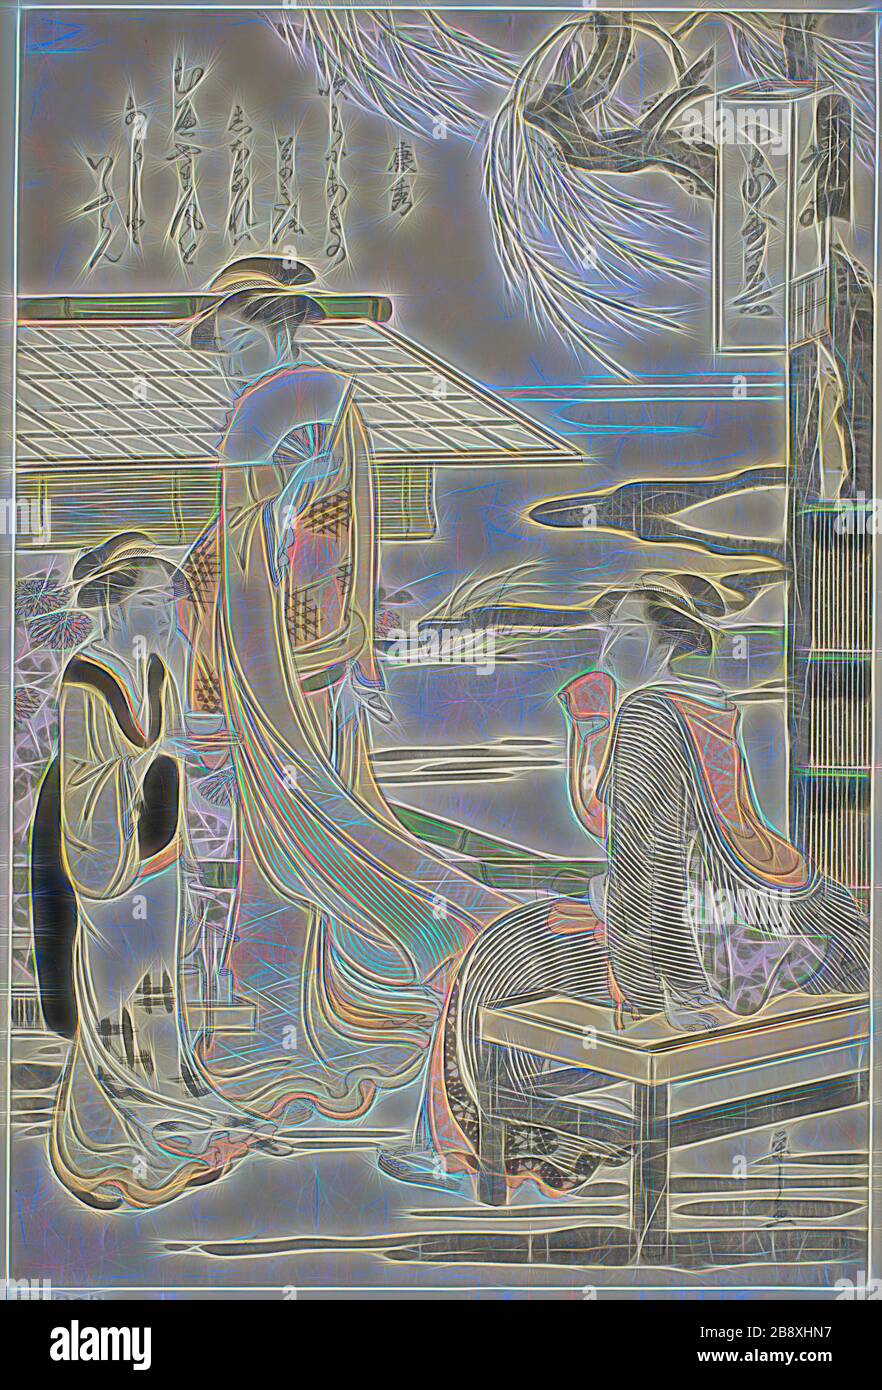 Yasuhide, de la série six Immortal Poets (Rokkasen), c. 1789/90, Chobunsai Eishi, Japonais, 1756-1829, Japon, imprimé color woodblock, oban, 37,2 x 24,7 cm (14 5/8 x 9 3/4 in.), réinventé par Gibon, design de glanissement chaleureux et gai de la luminosité et des rayons de lumière radiance. L'art classique réinventé avec une touche moderne. La photographie inspirée du futurisme, qui embrasse l'énergie dynamique de la technologie moderne, du mouvement, de la vitesse et révolutionne la culture. Banque D'Images